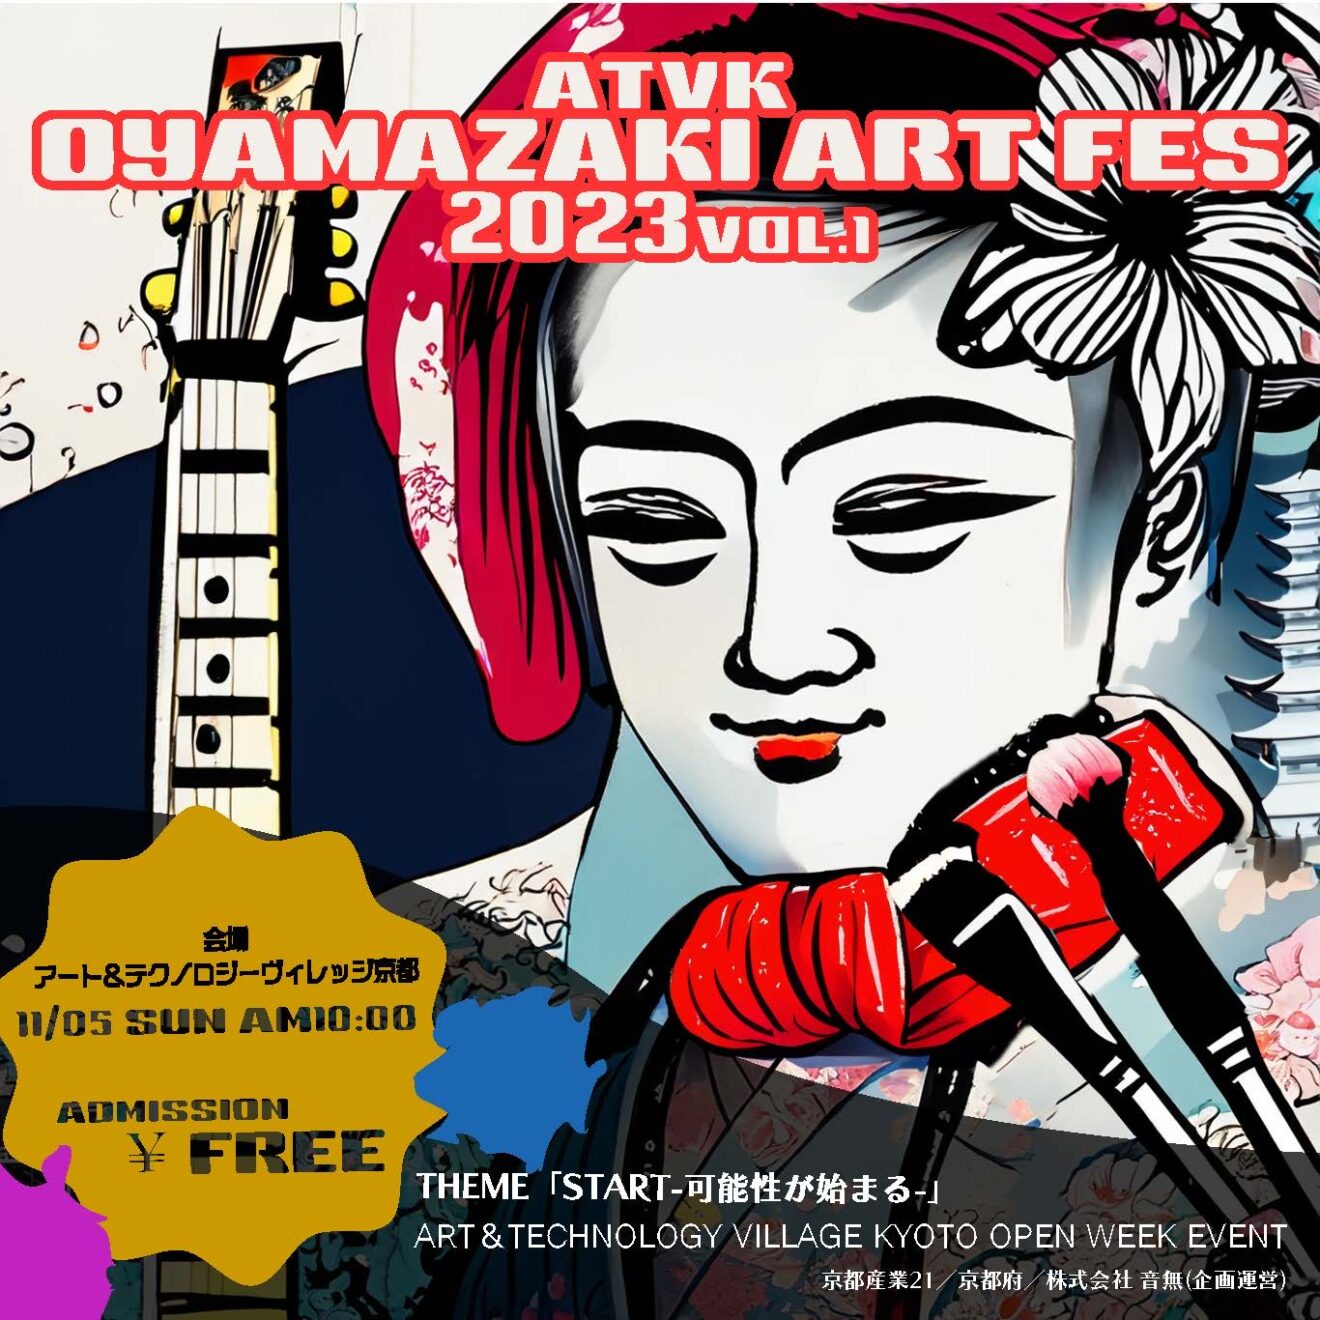 イベント参加・展示のお知らせ | ATVK(アート&テクノロジーヴィレッジ京都)プロジェクト